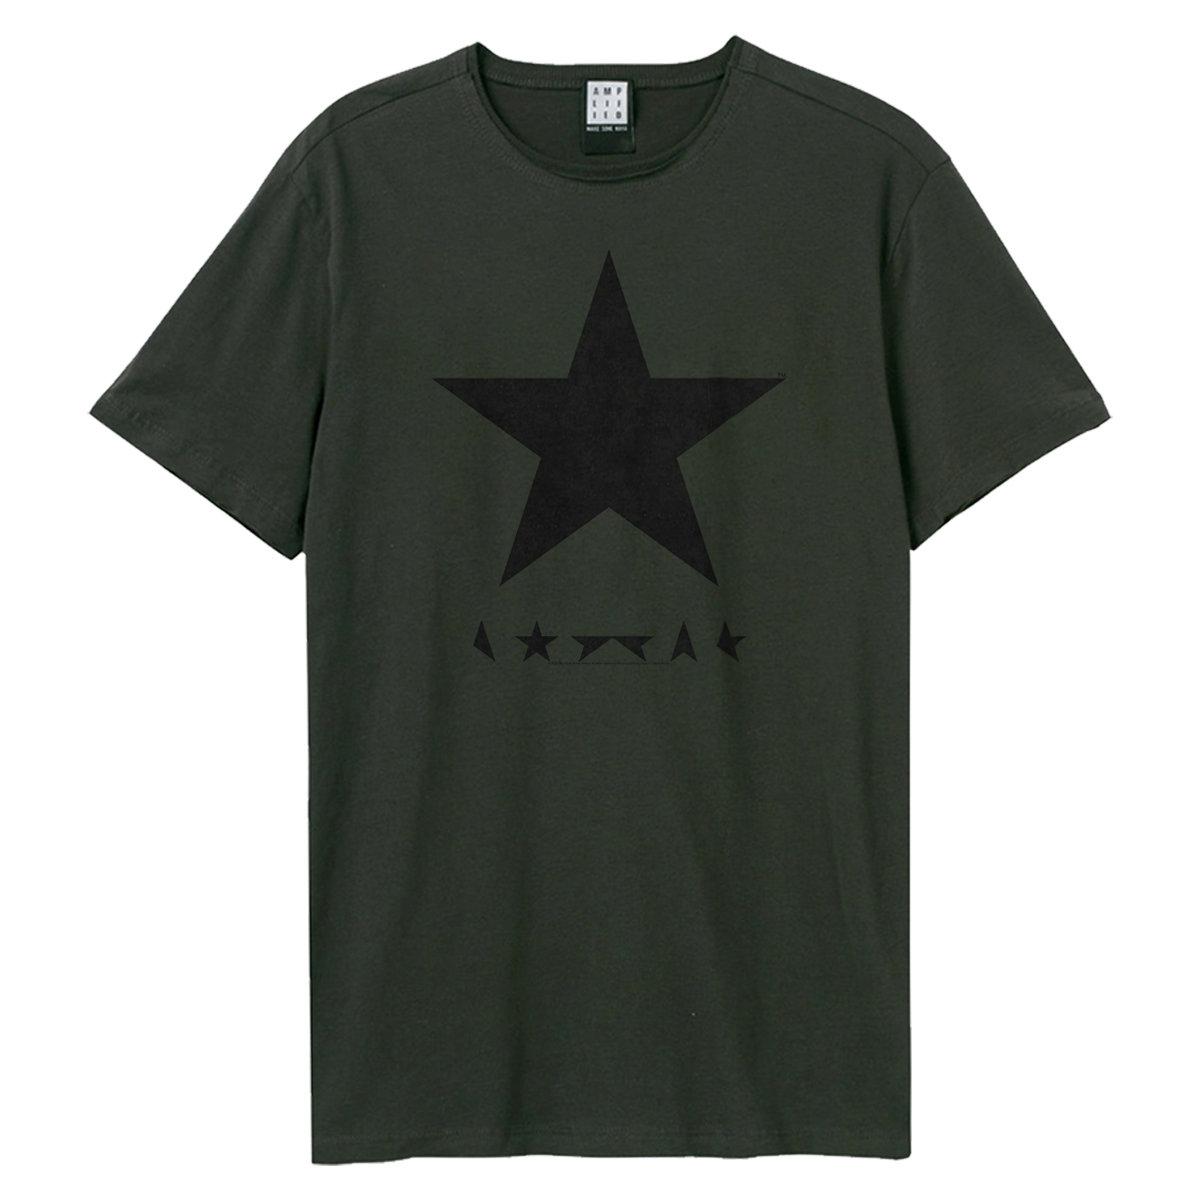 (アンプリファイド) Amplified オフィシャル商品 ユニセックス デヴィッド・ボウイ Tシャツ Black Star 半袖 カットソー トップス 【海外通販】